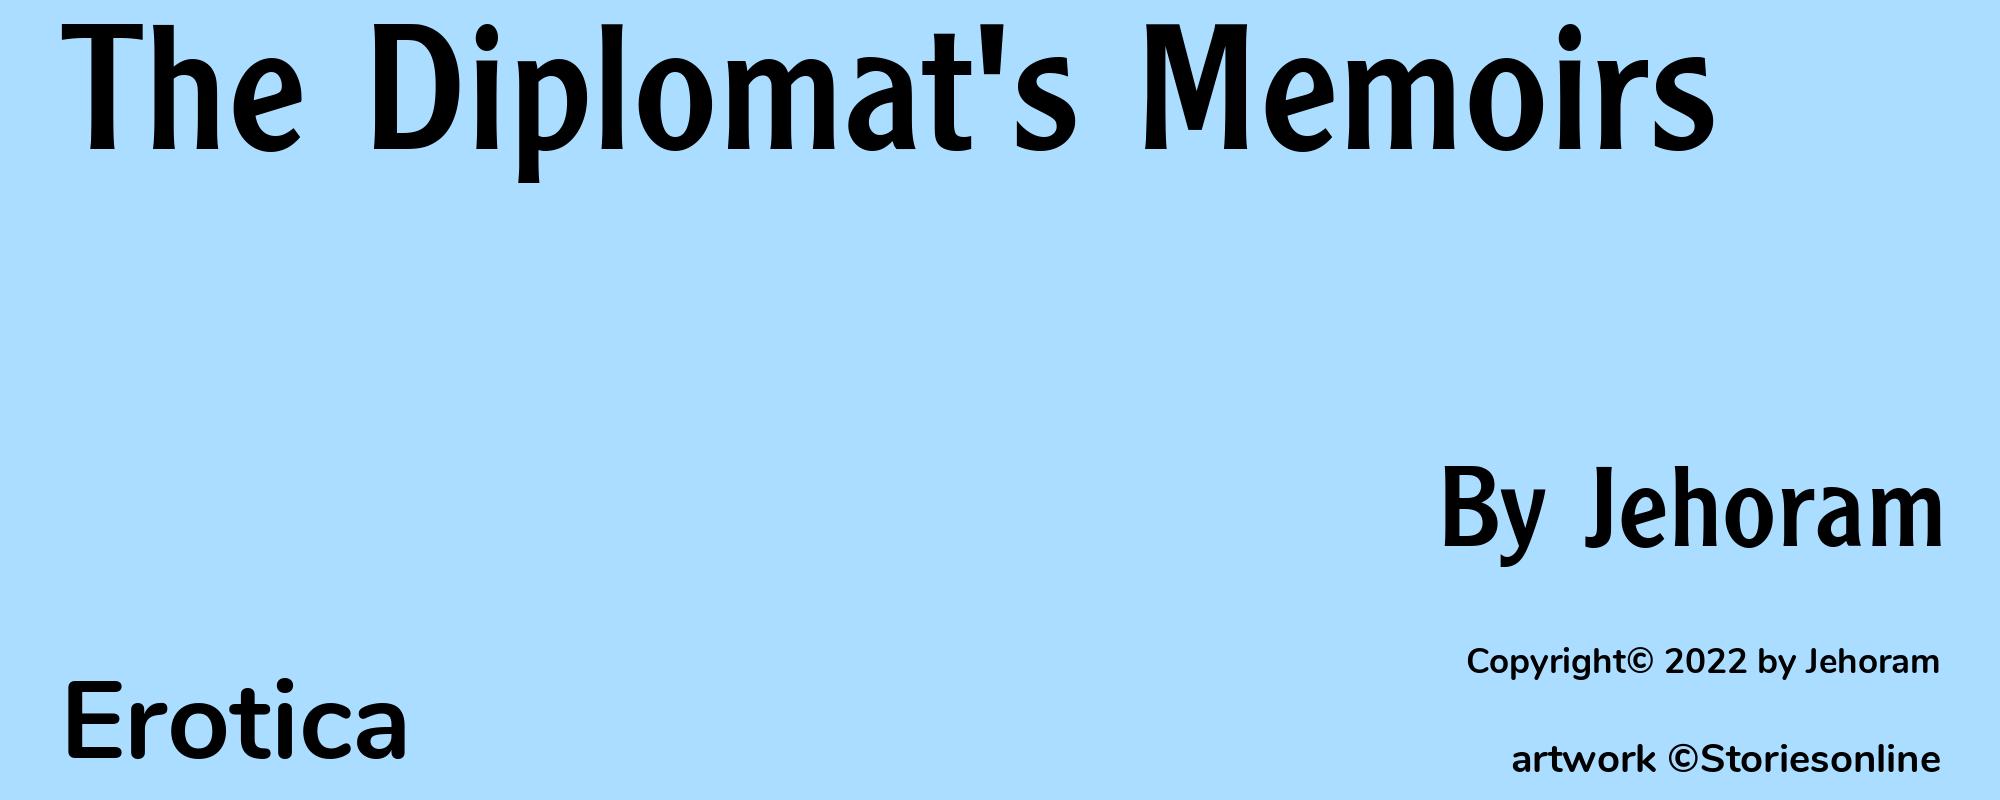 The Diplomat's Memoirs - Cover